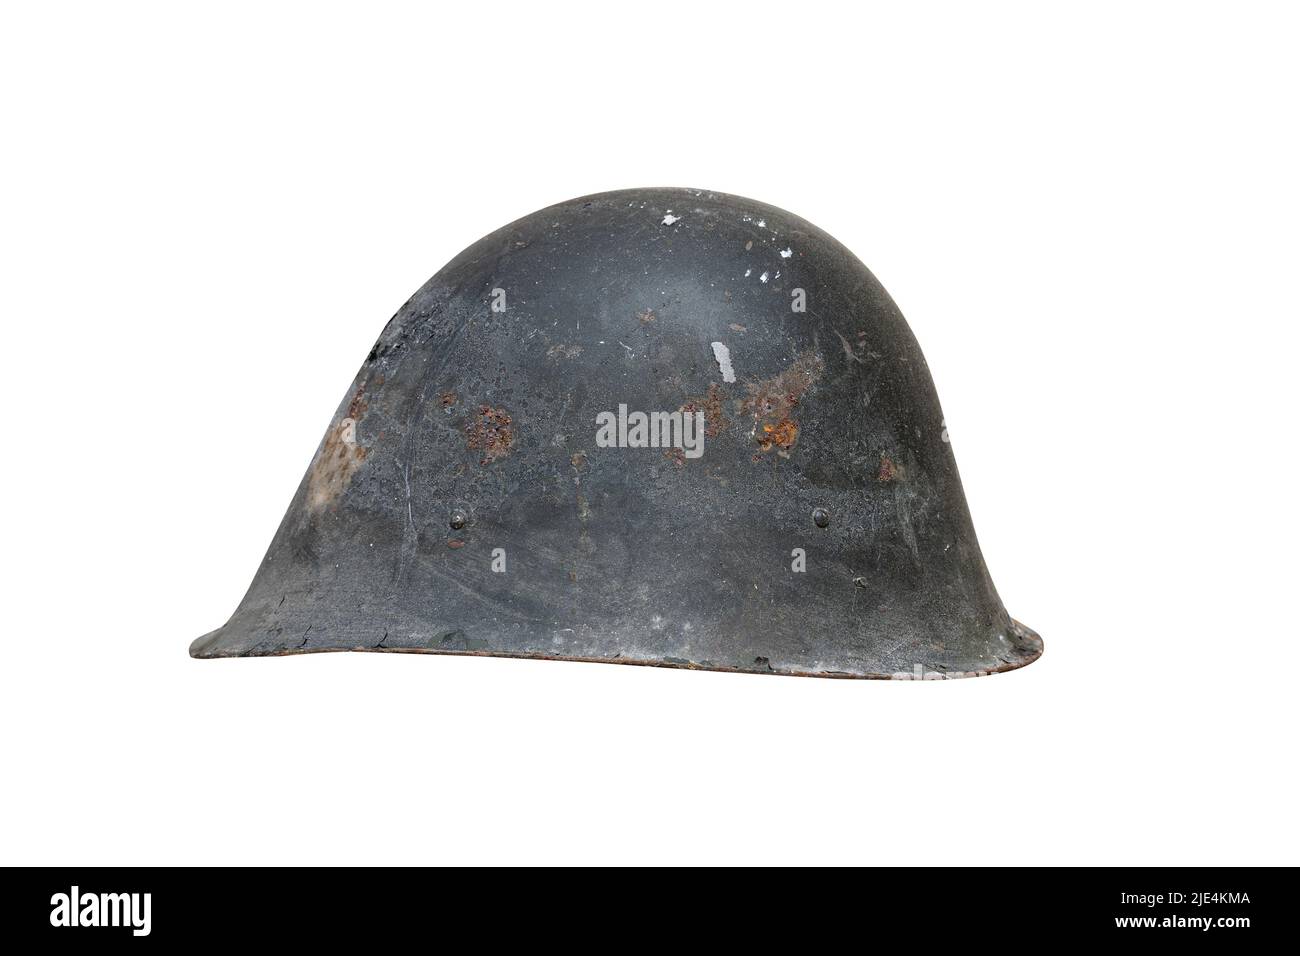 Vue latérale gros plan de l'ancien casque en métal rouillé noir de la Seconde Guerre mondiale avec des traces de rouille et des fissures isolées sur fond blanc Banque D'Images